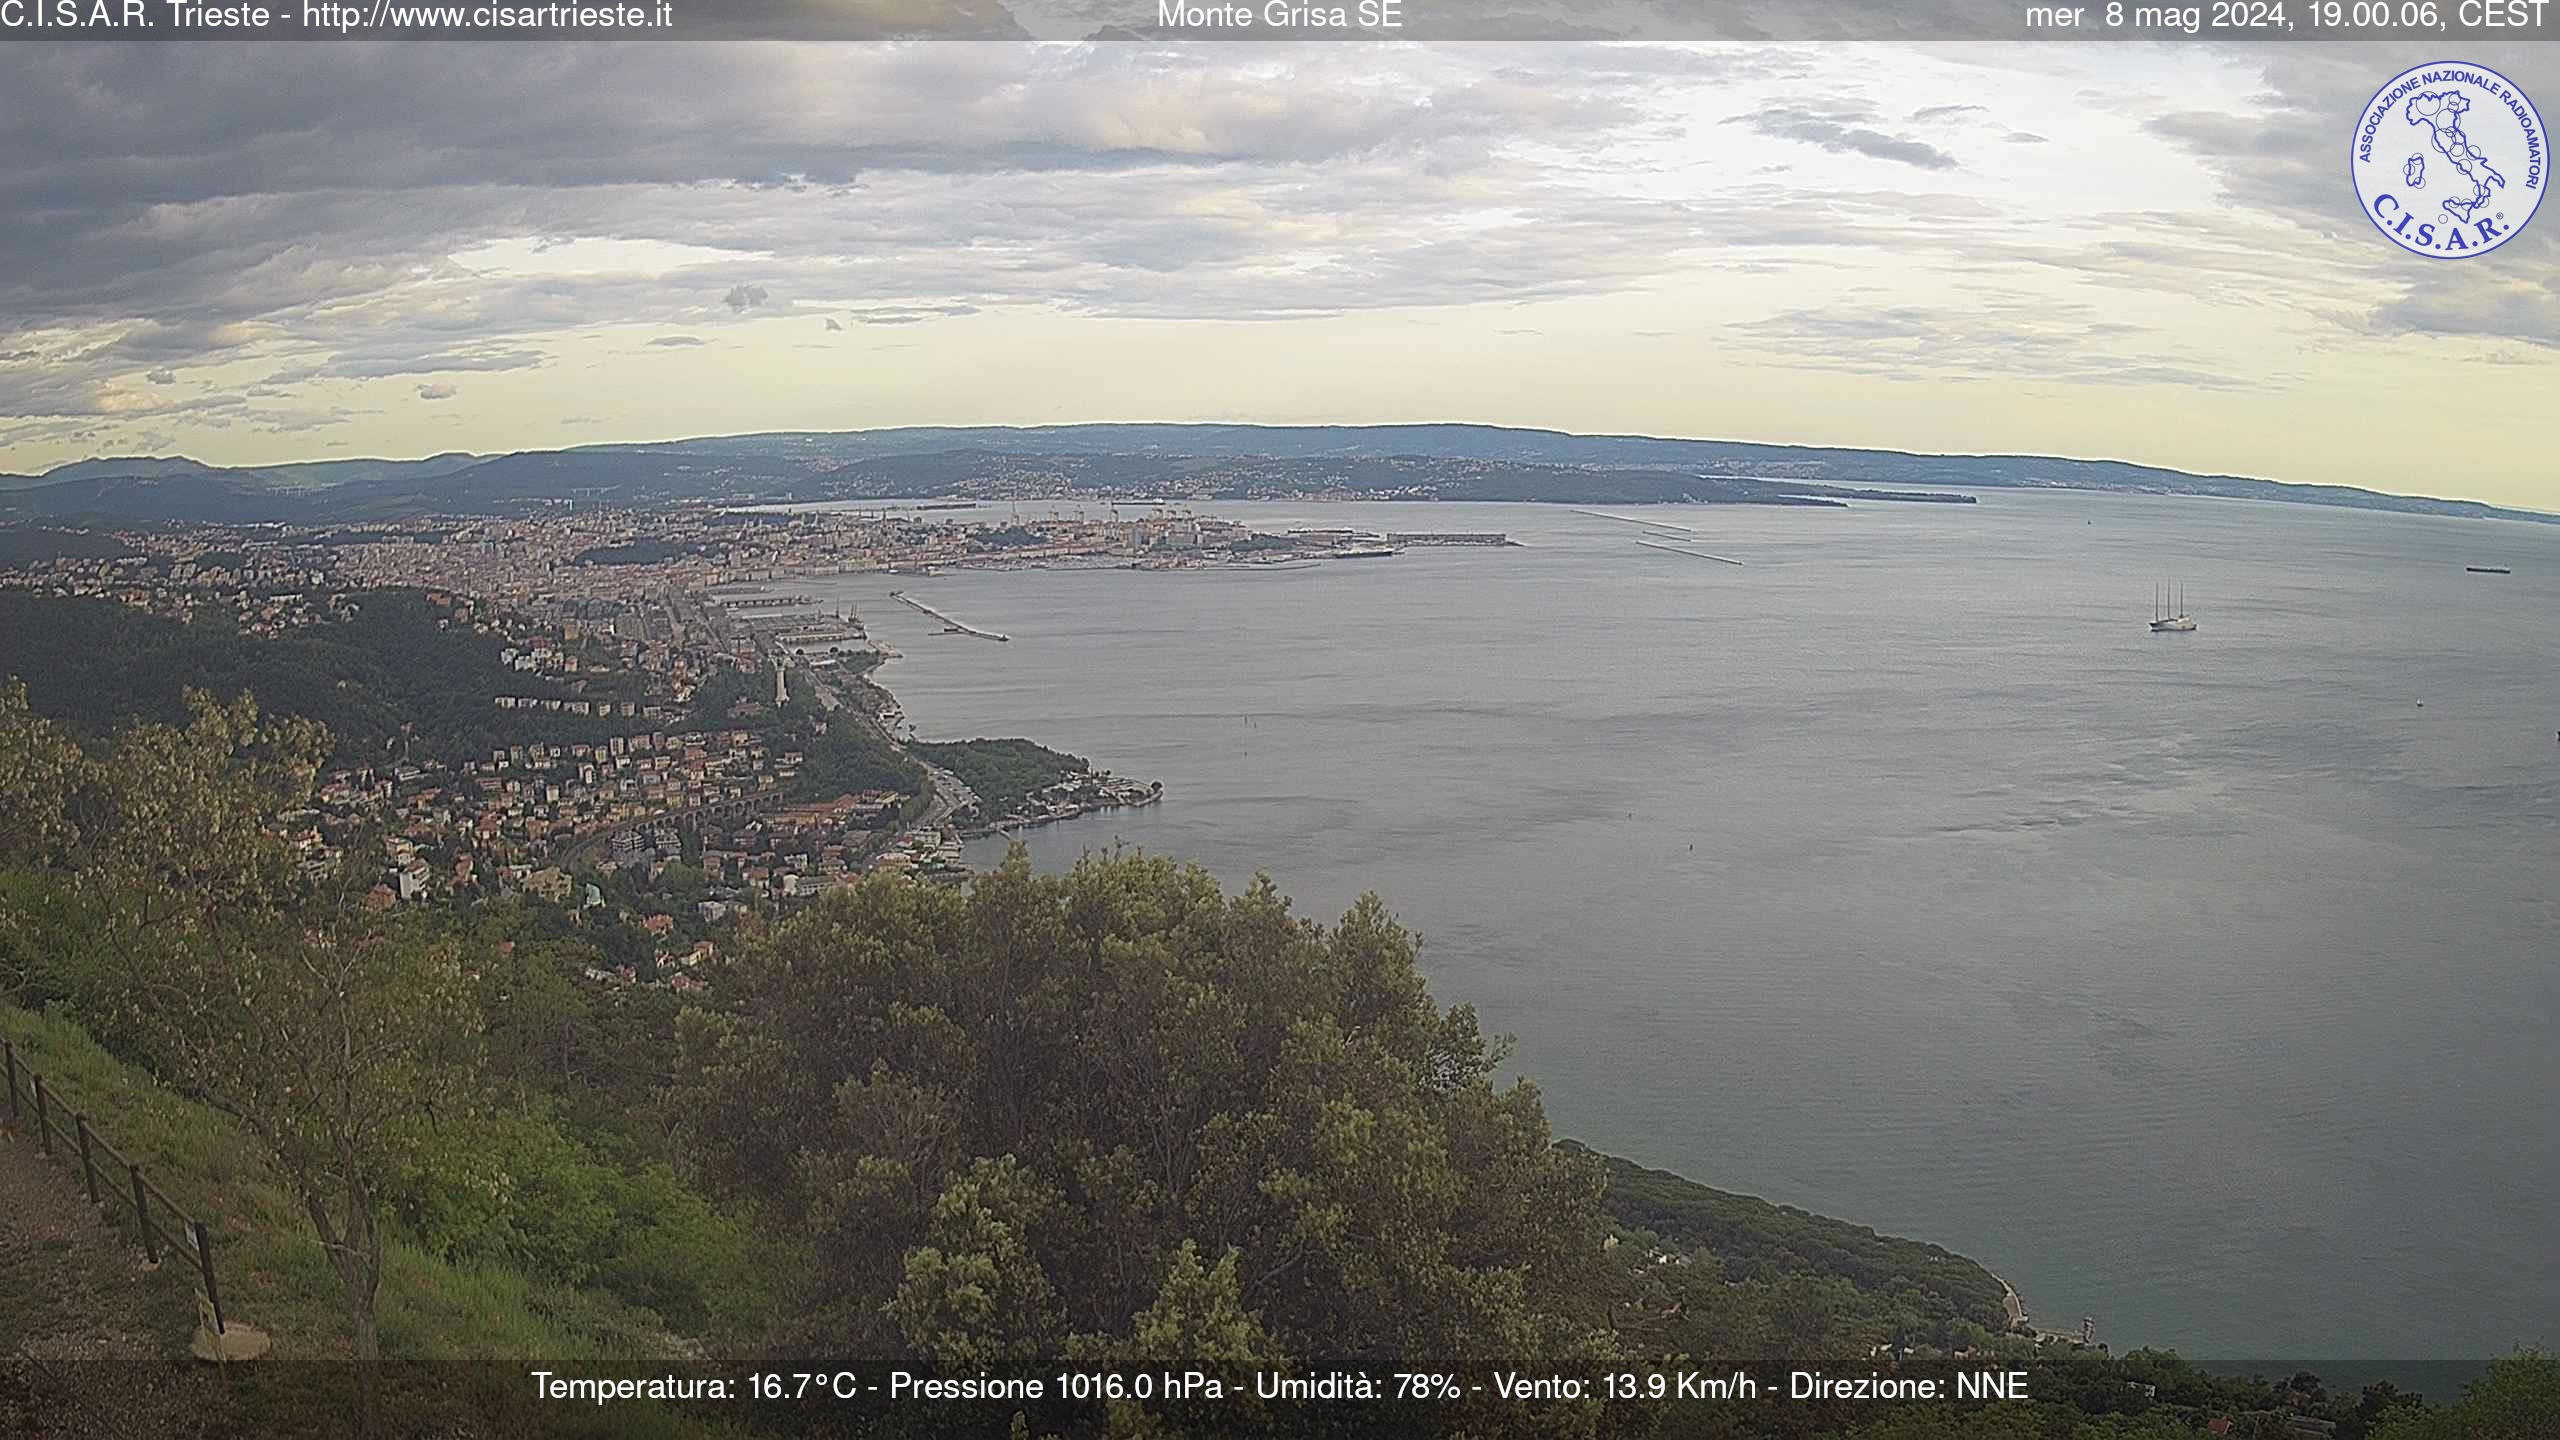 Webkamera - Terst / Trieste